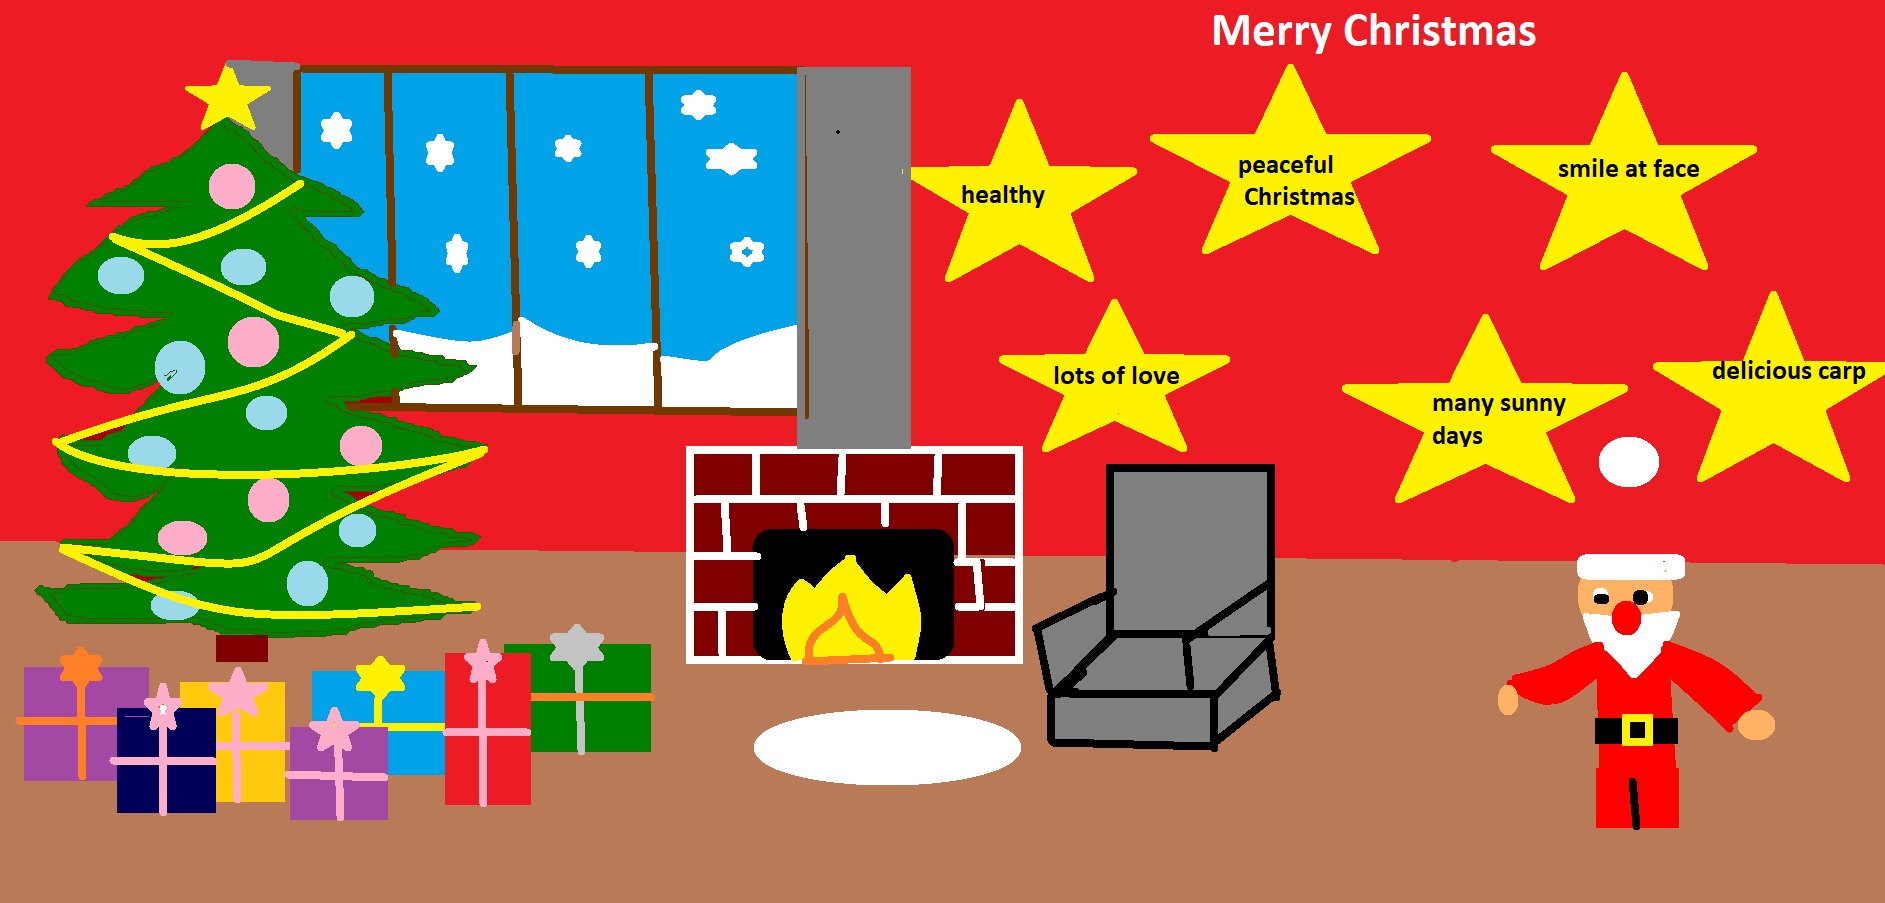 Kolorowa kartka świąteczna  z życzeniami w języku angielskim.
